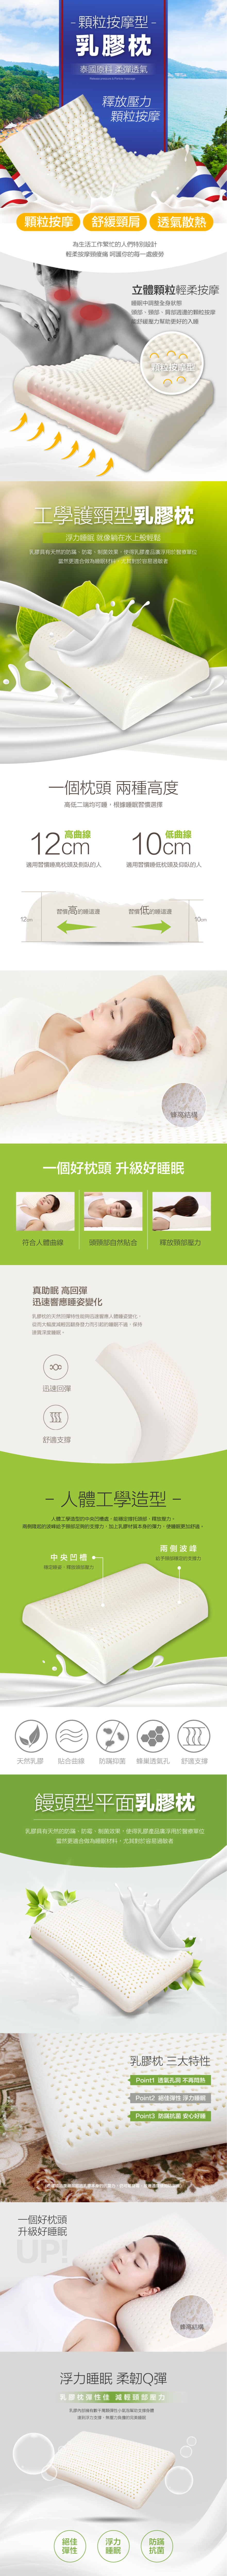 防螨抗菌天然乳膠枕系列